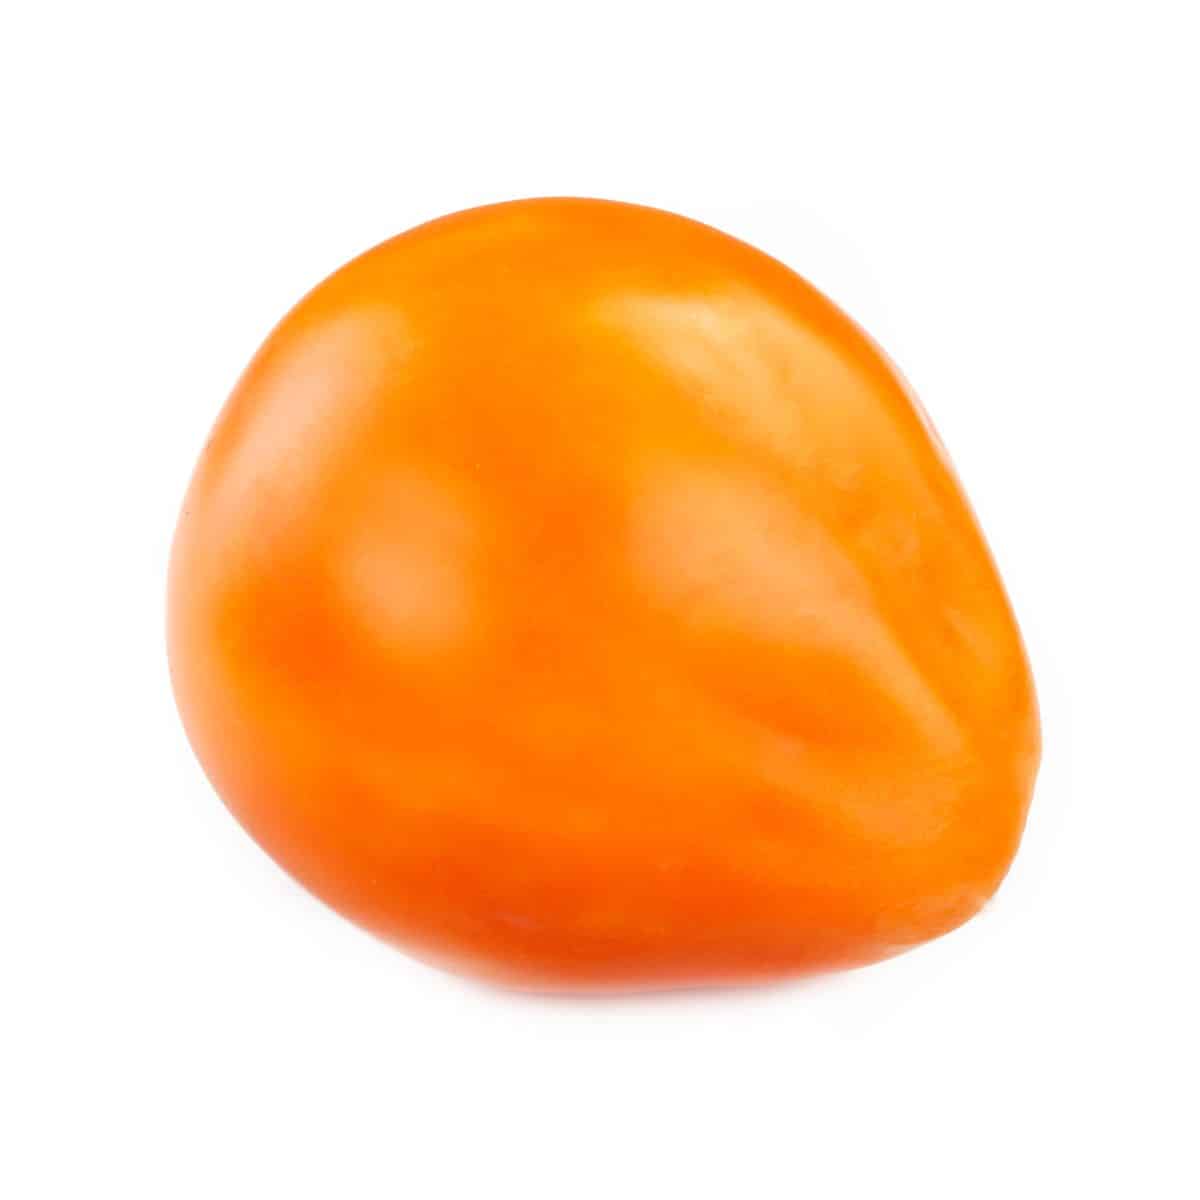 An orange oxheart tomato on a white background.